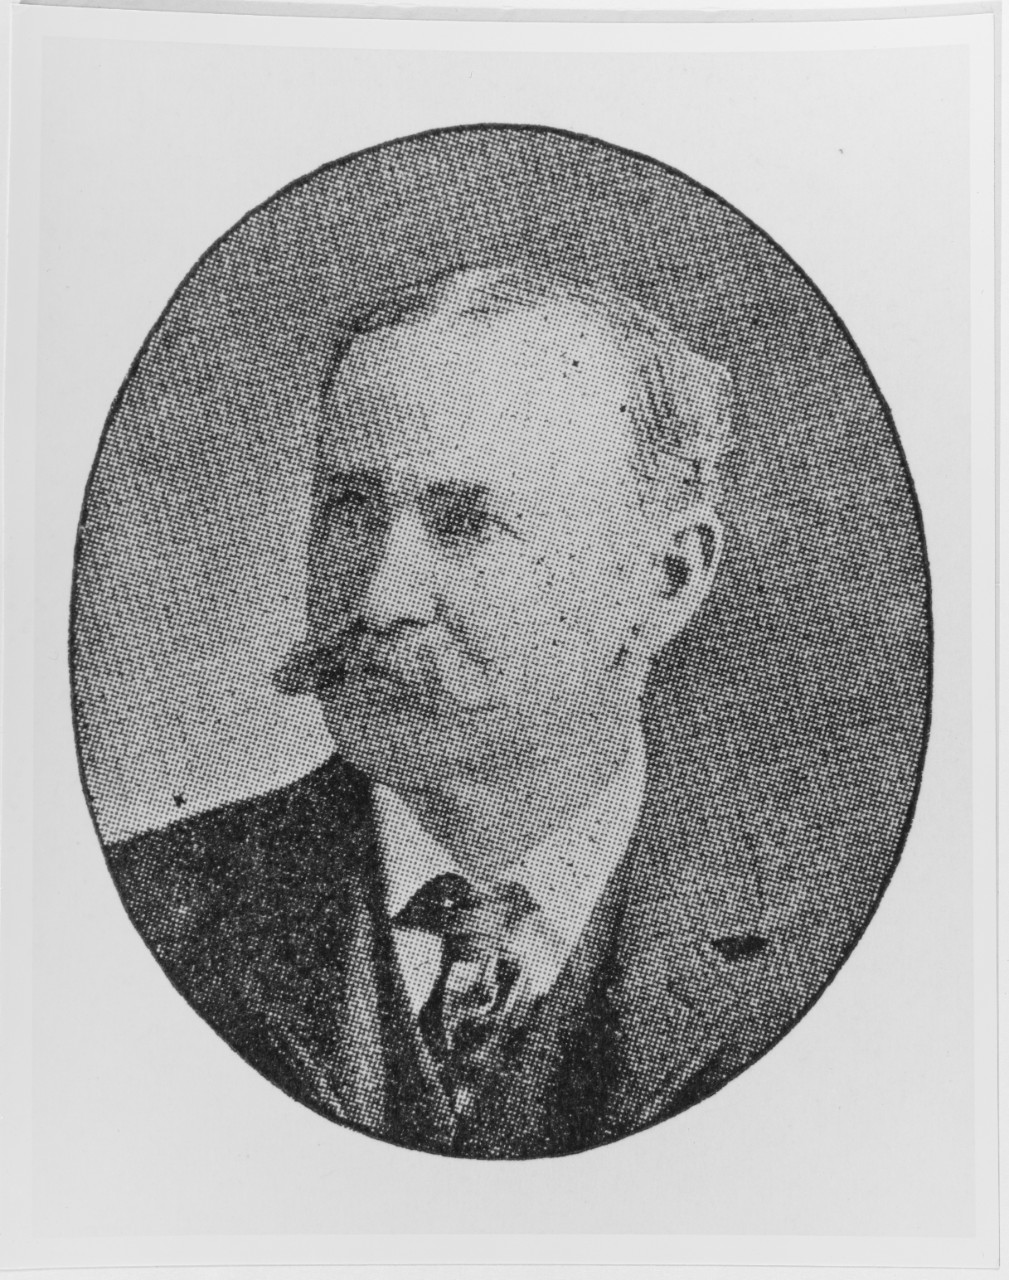 William W. Williams, portrait